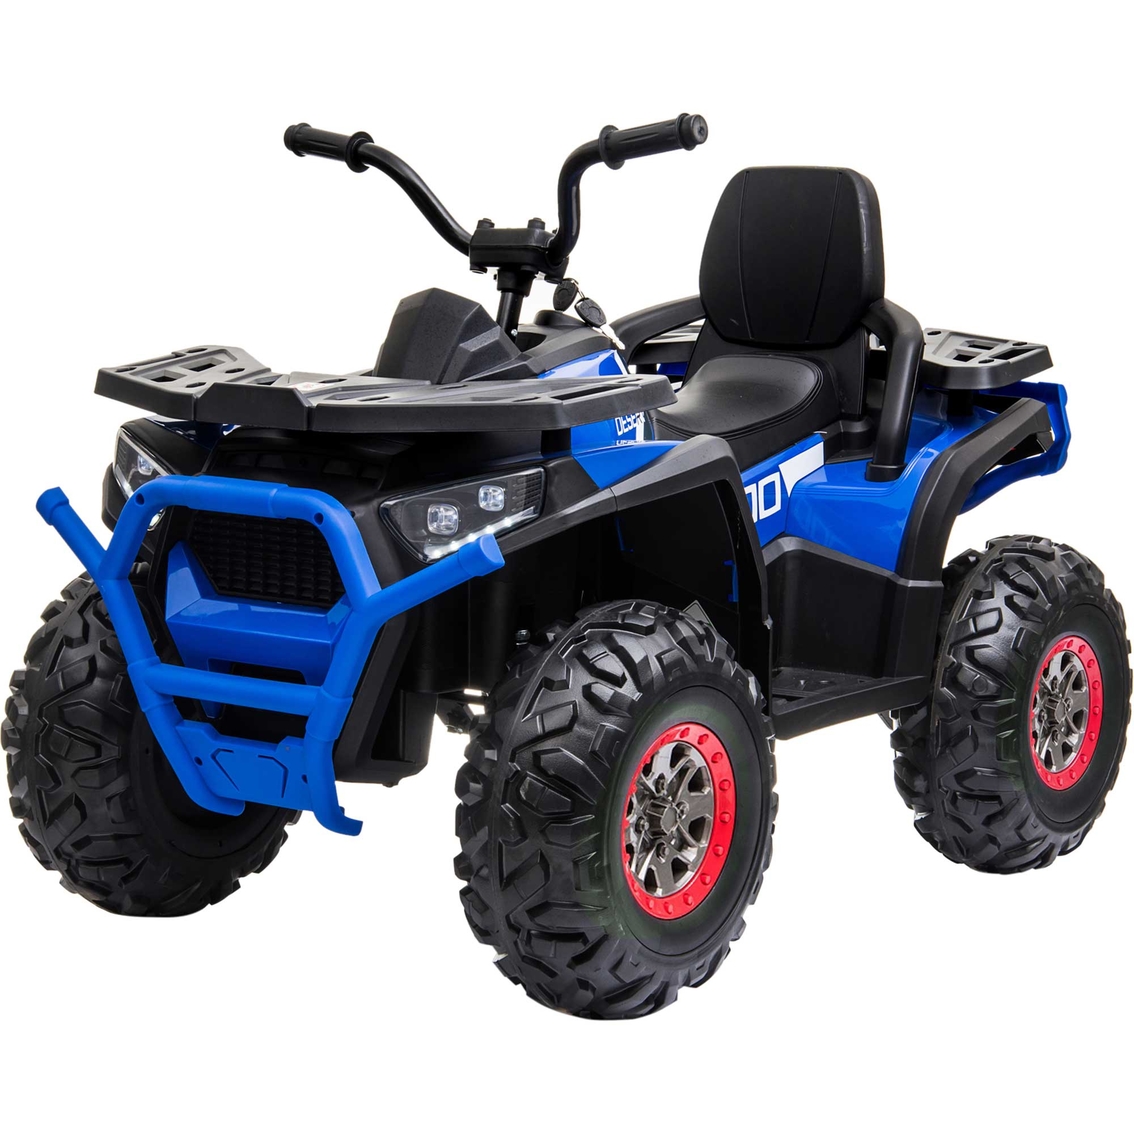 Blazin' Wheels Blue Quad Atv 12v Ride On | Riding Toys | Baby & Toys ...